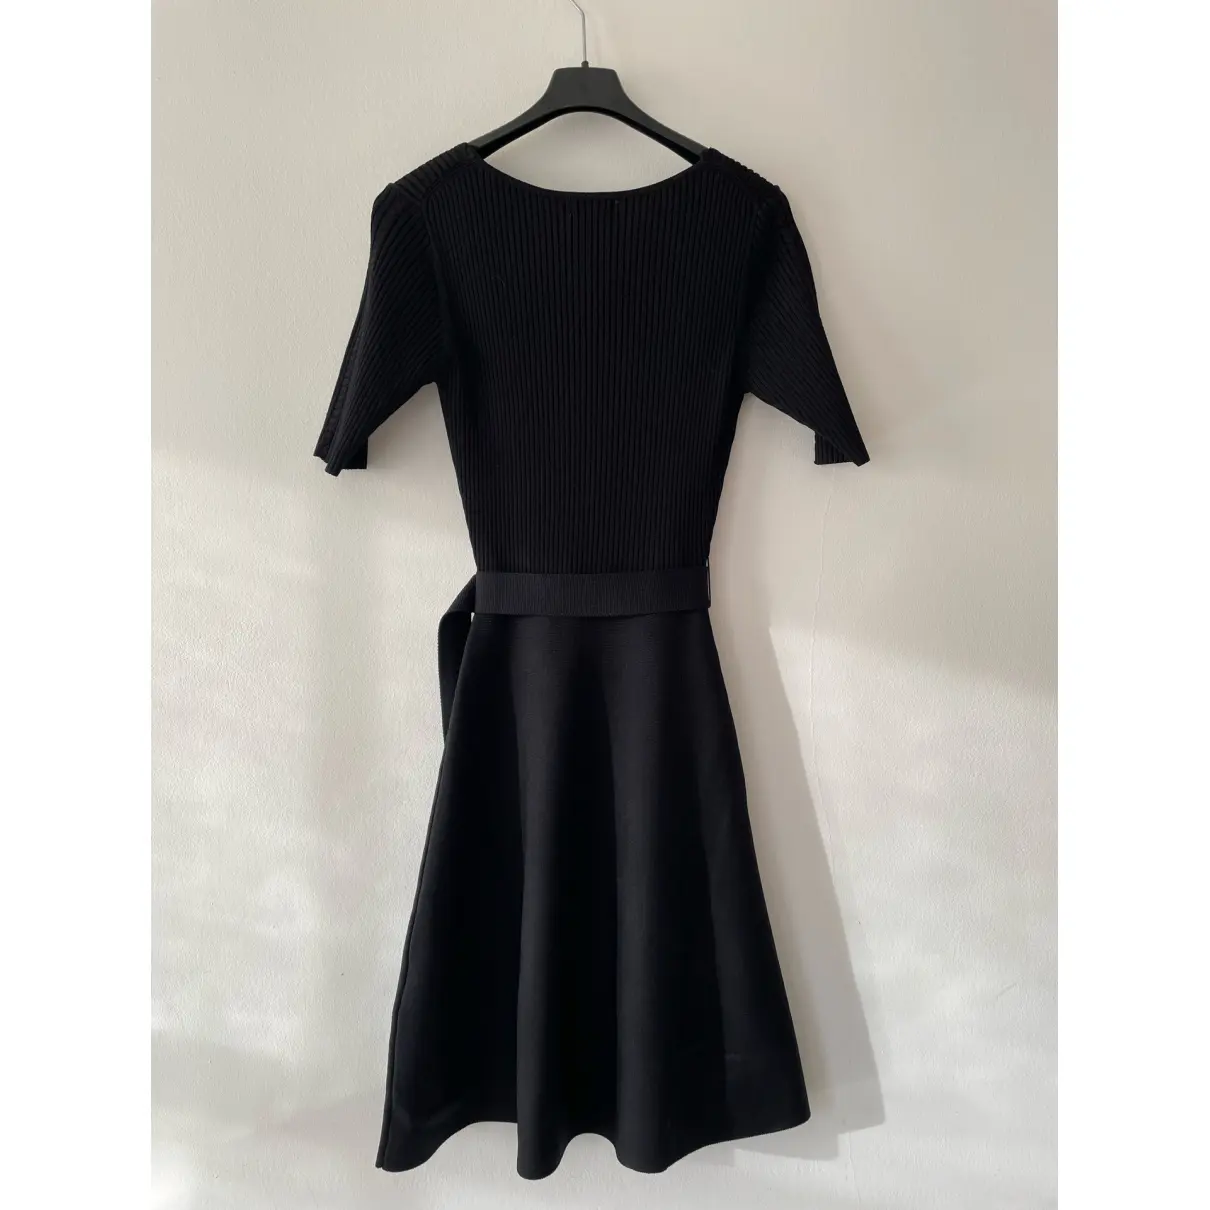 Buy Claudie Pierlot Spring Summer 2020 mini dress online